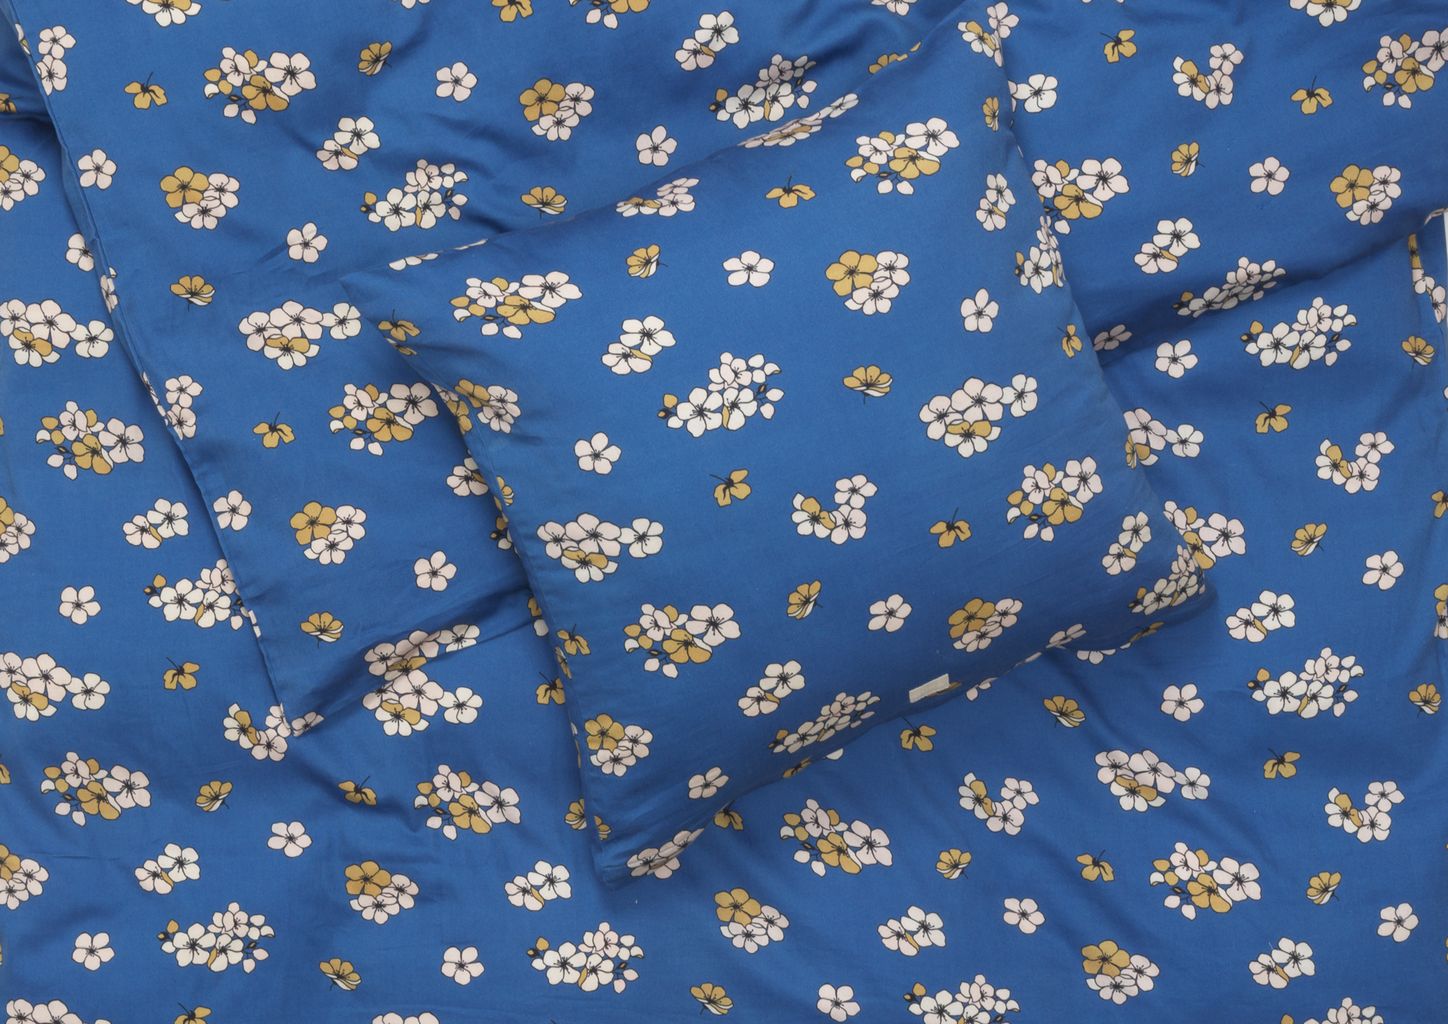 Juna grand behagelig seng lin 140 x220 cm, blå